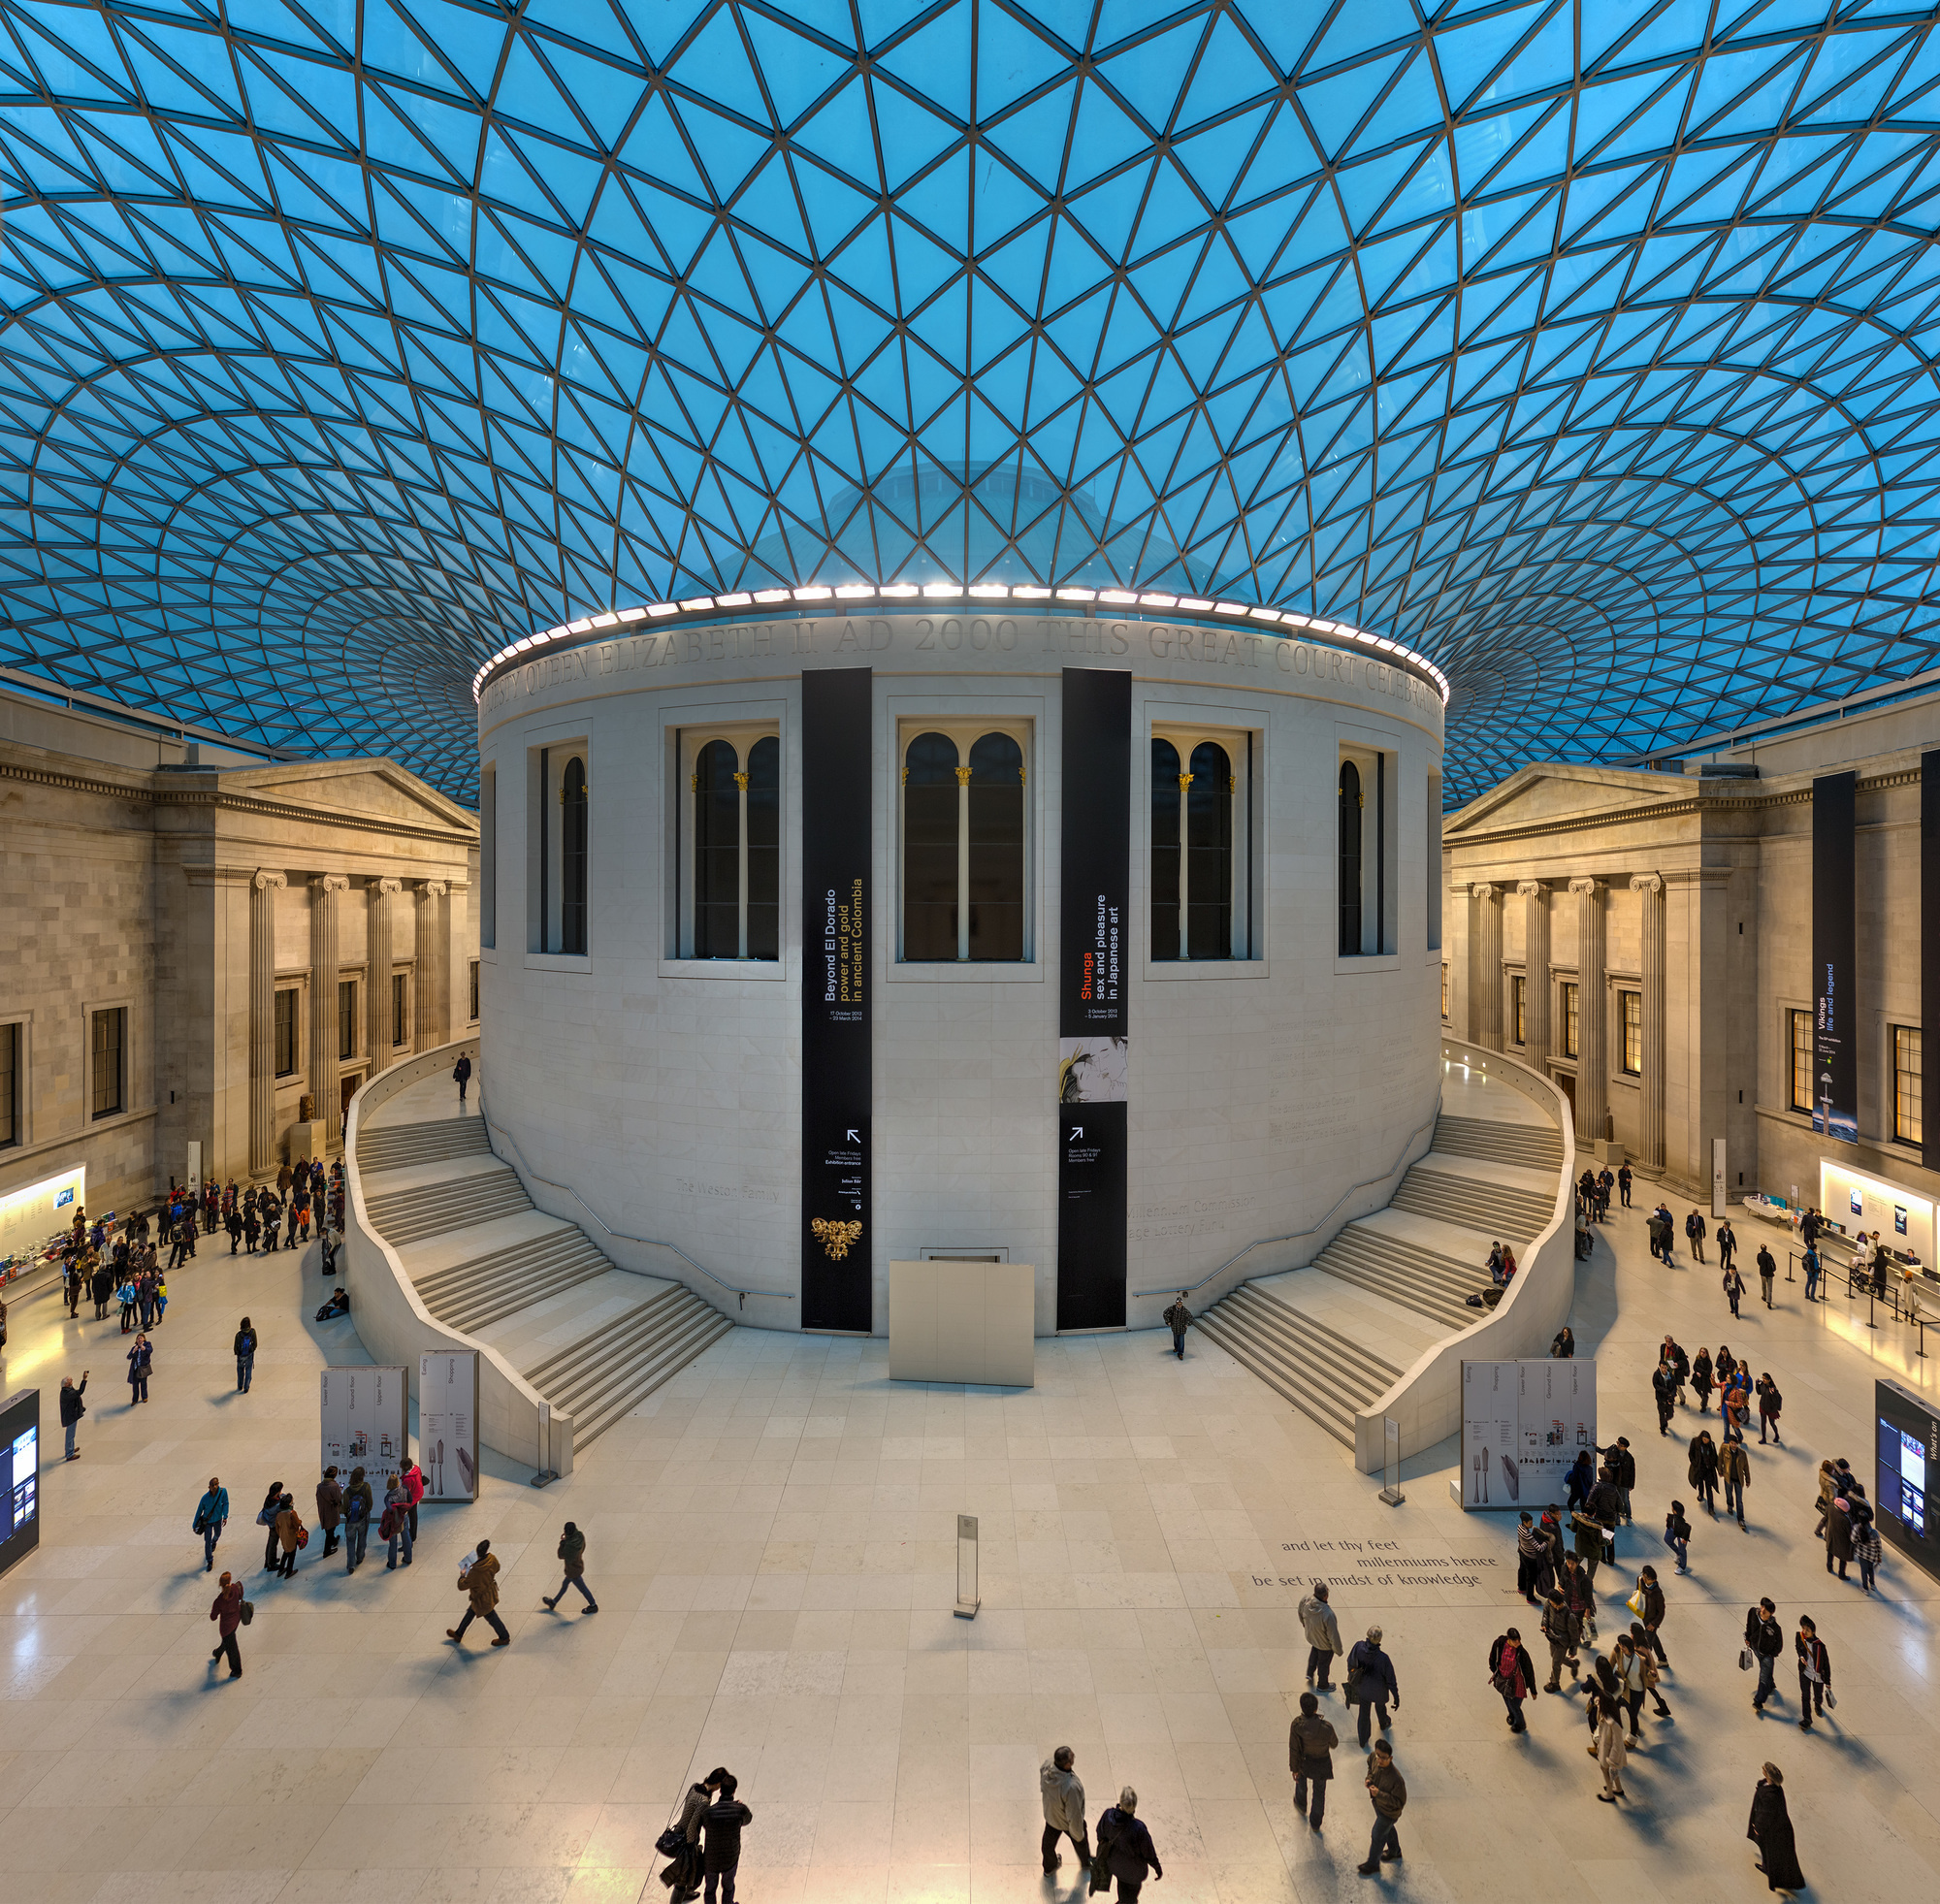 大英博物館巨堂 (British Museum Great Court), 英國倫敦